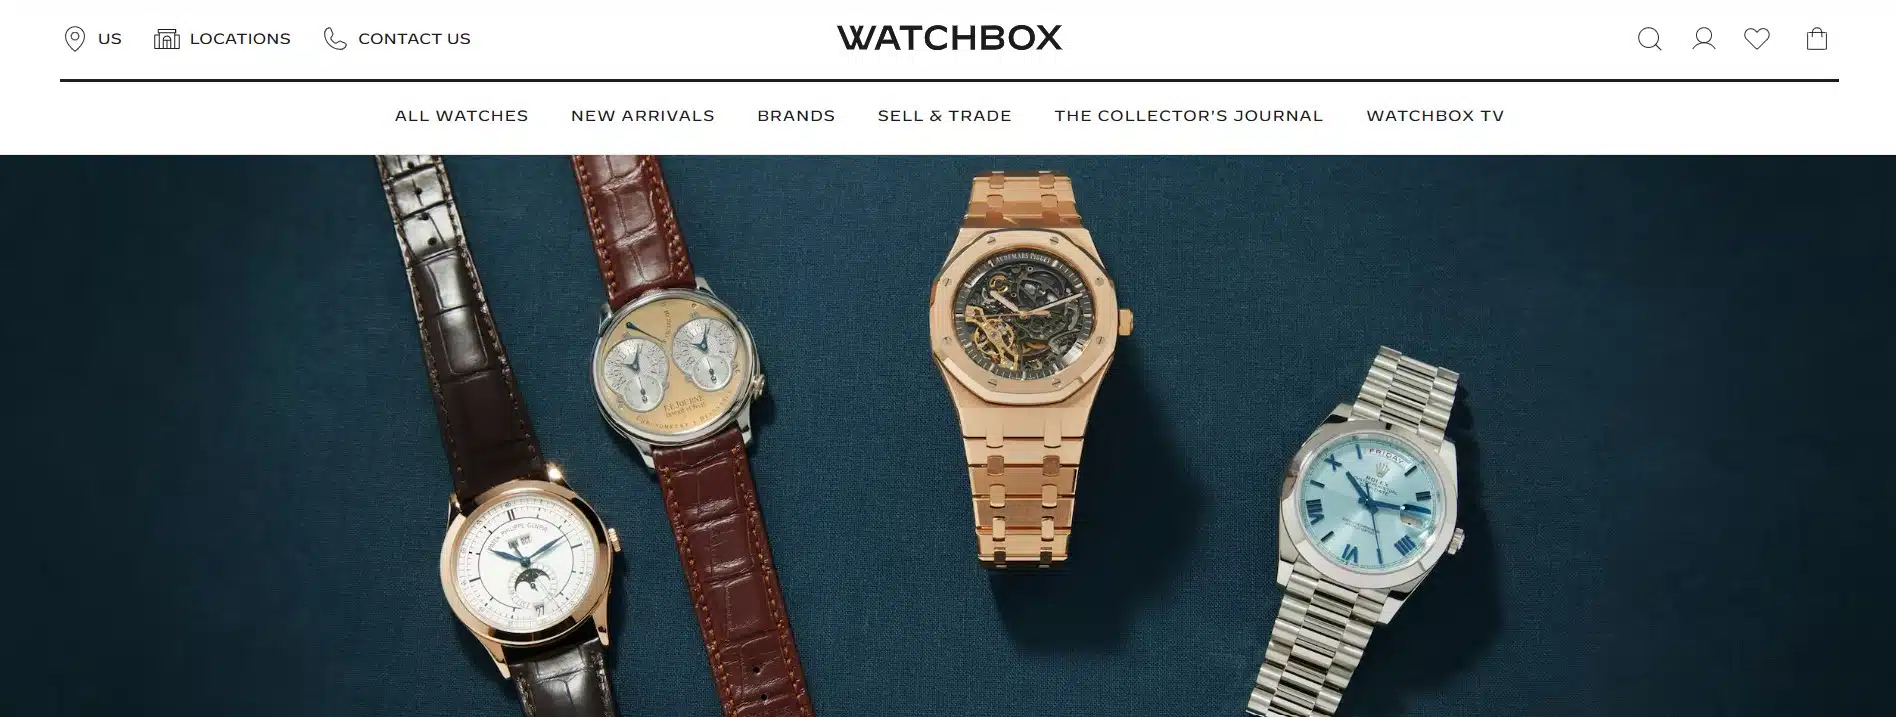 Watchbox Watches